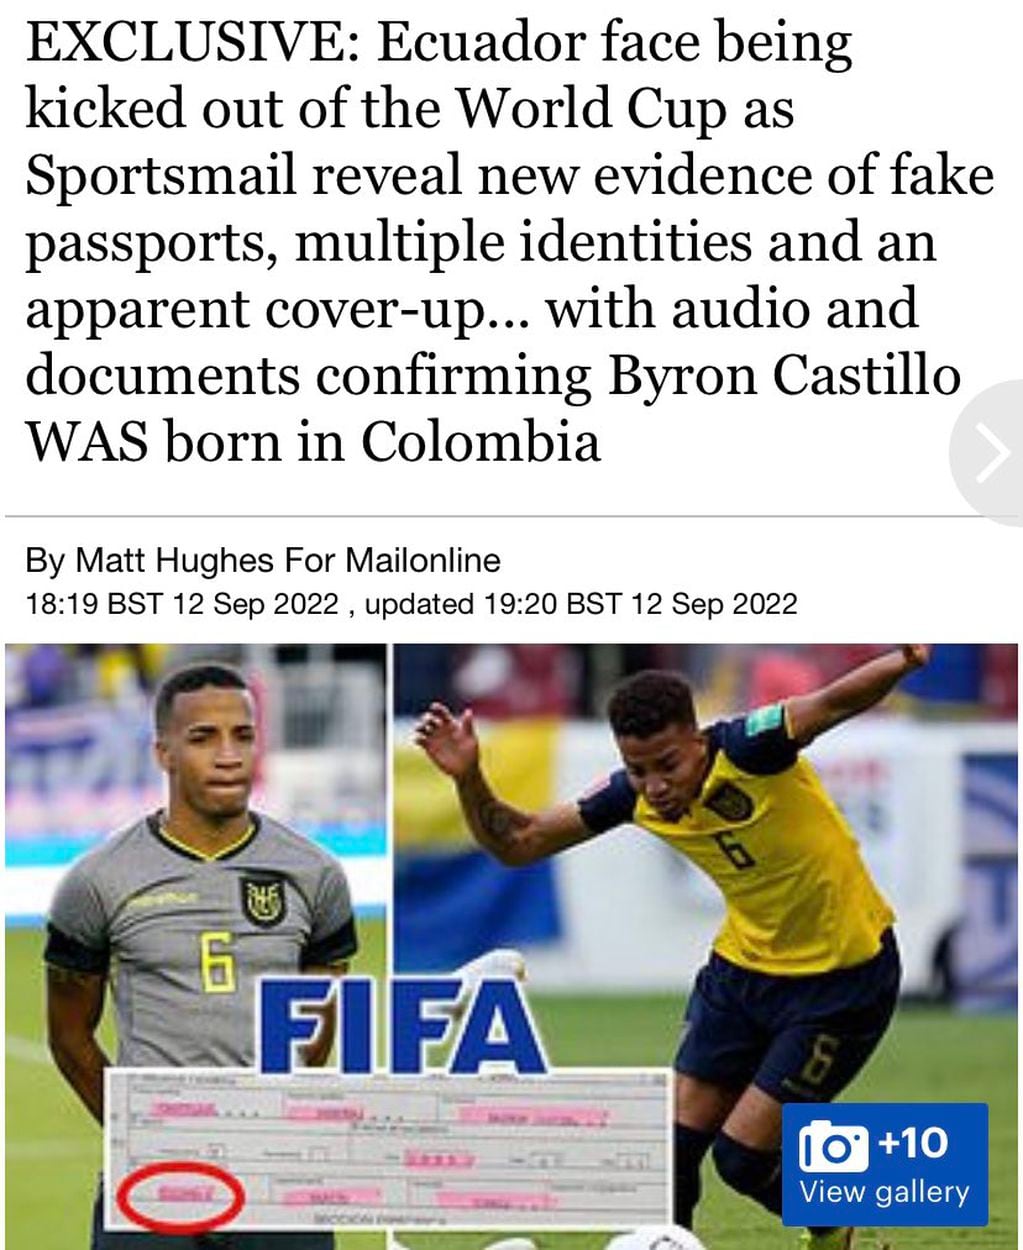 Ecuador podría ser expulsada del Mundial de Qatar por la falsificación de identidad de Byron Castillo.